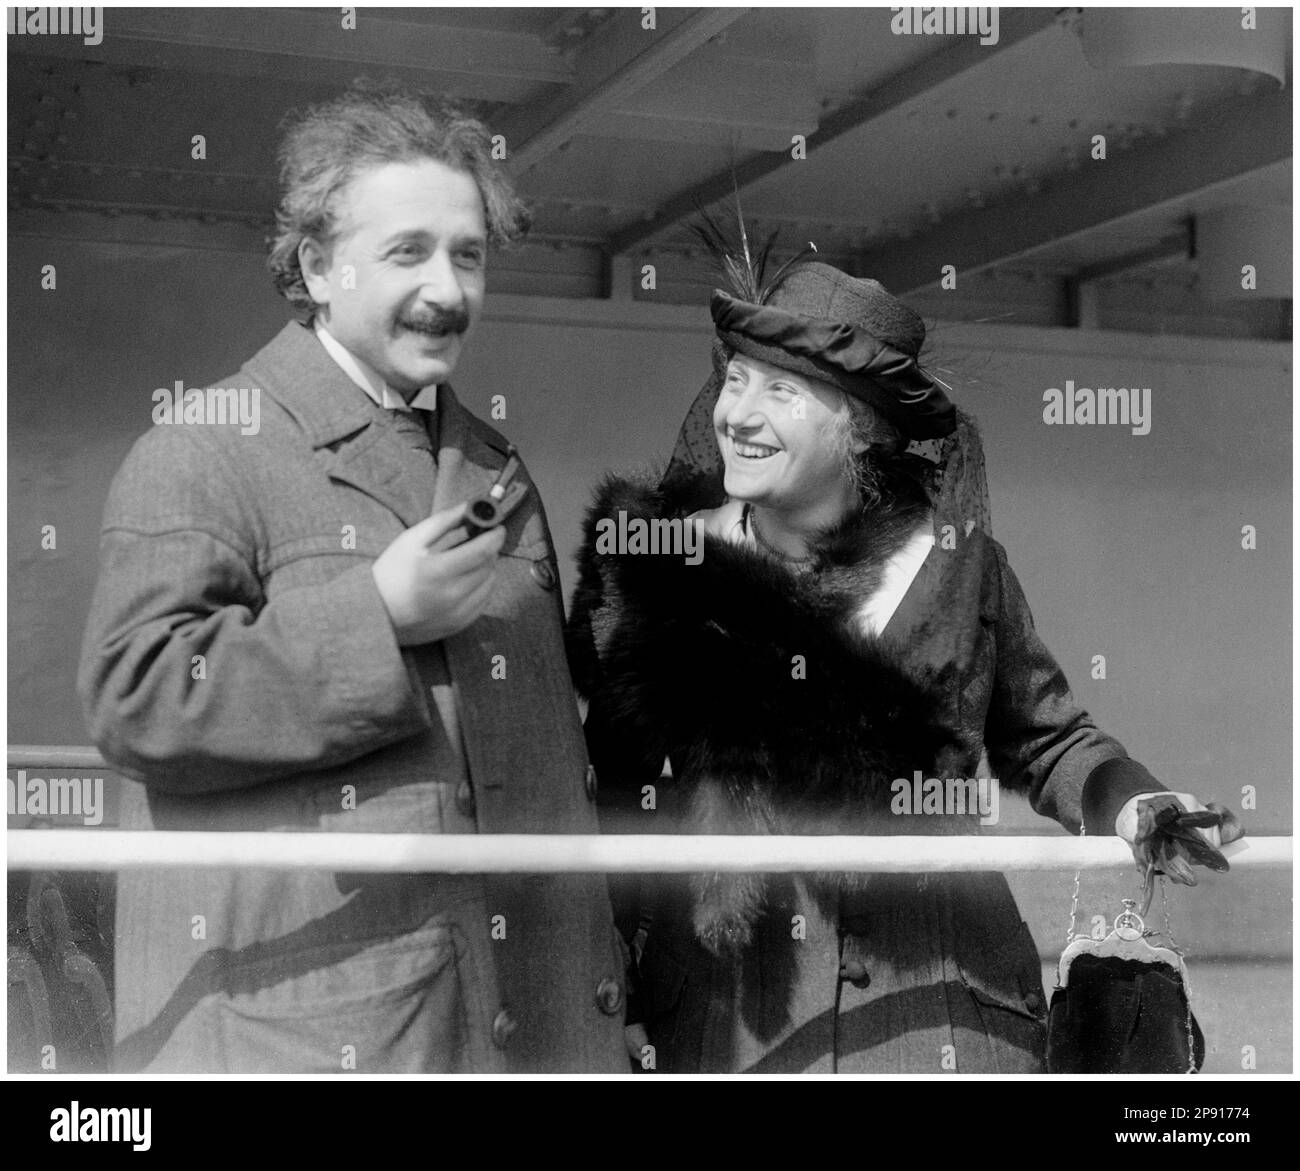 Albert Einstein (1879-1955), físico teórico de origen alemán, con su esposa Elsa Einstein (1876-1936), llegando a Nueva York a bordo del SS Rotterdam, fotografía de Bain News Service, 1915-1920 Foto de stock